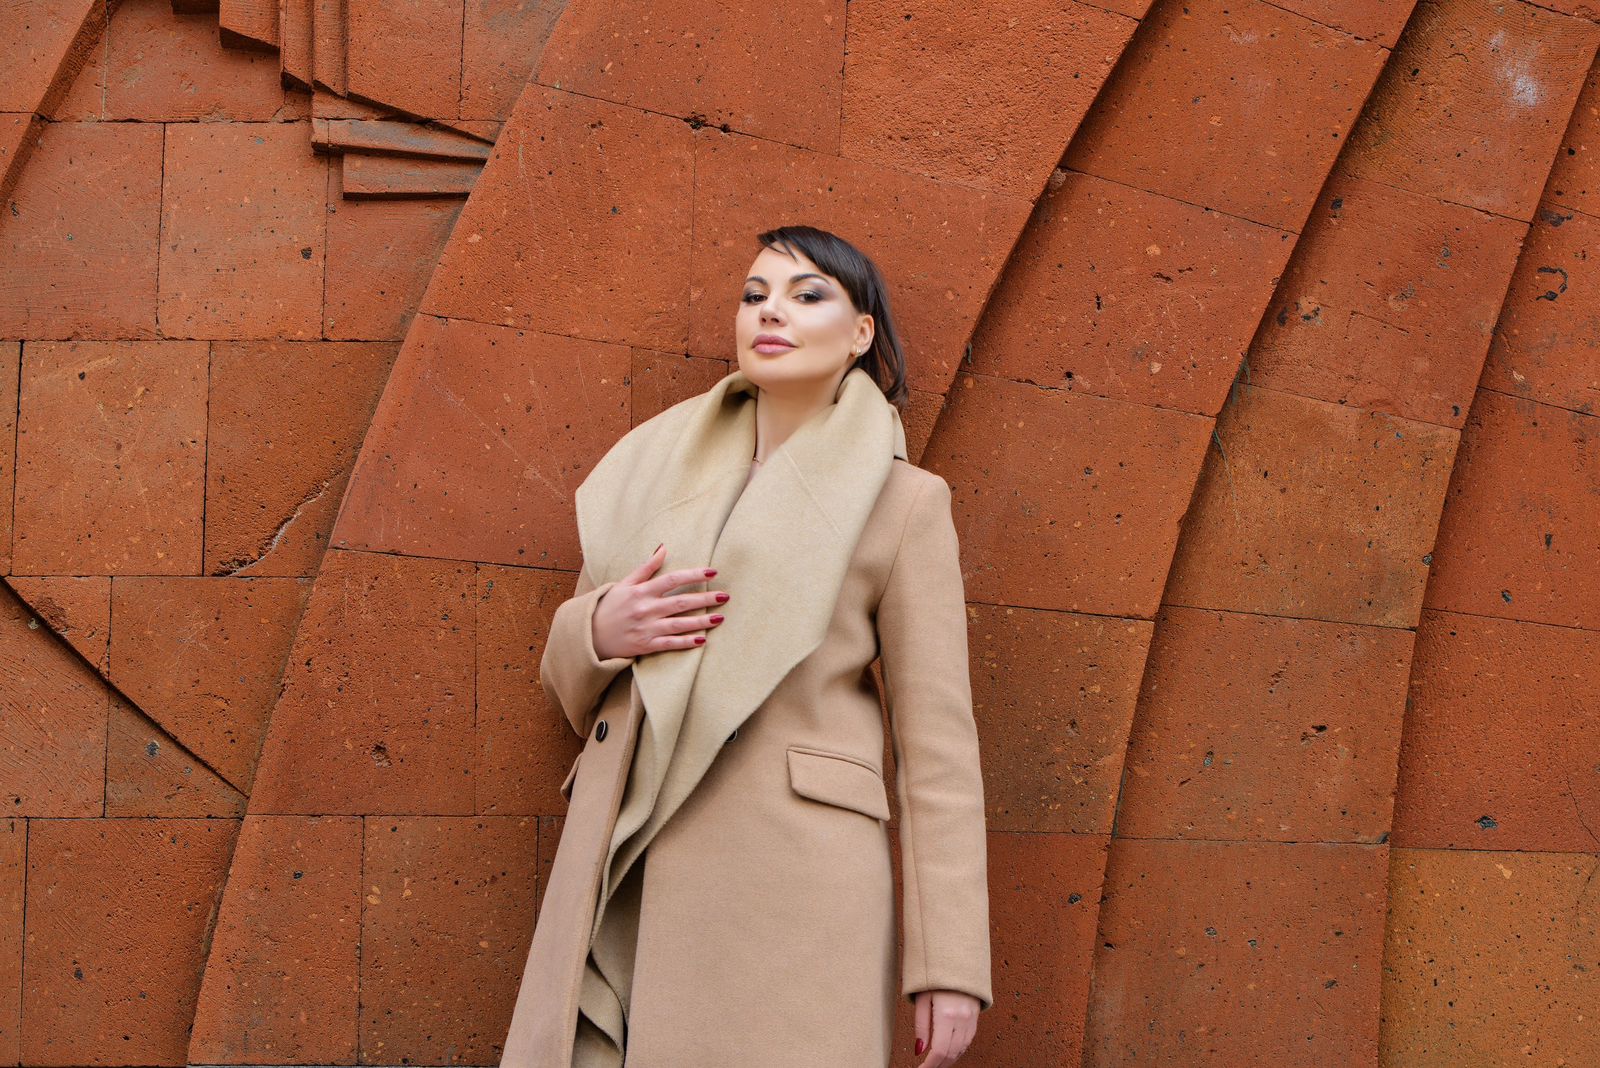 من أرمينيا.. دارين حمزة تحتفل بالفلانتين بجلسة تصويرية مع المصور العالمي "ايدغار مارتيروسيات" 5